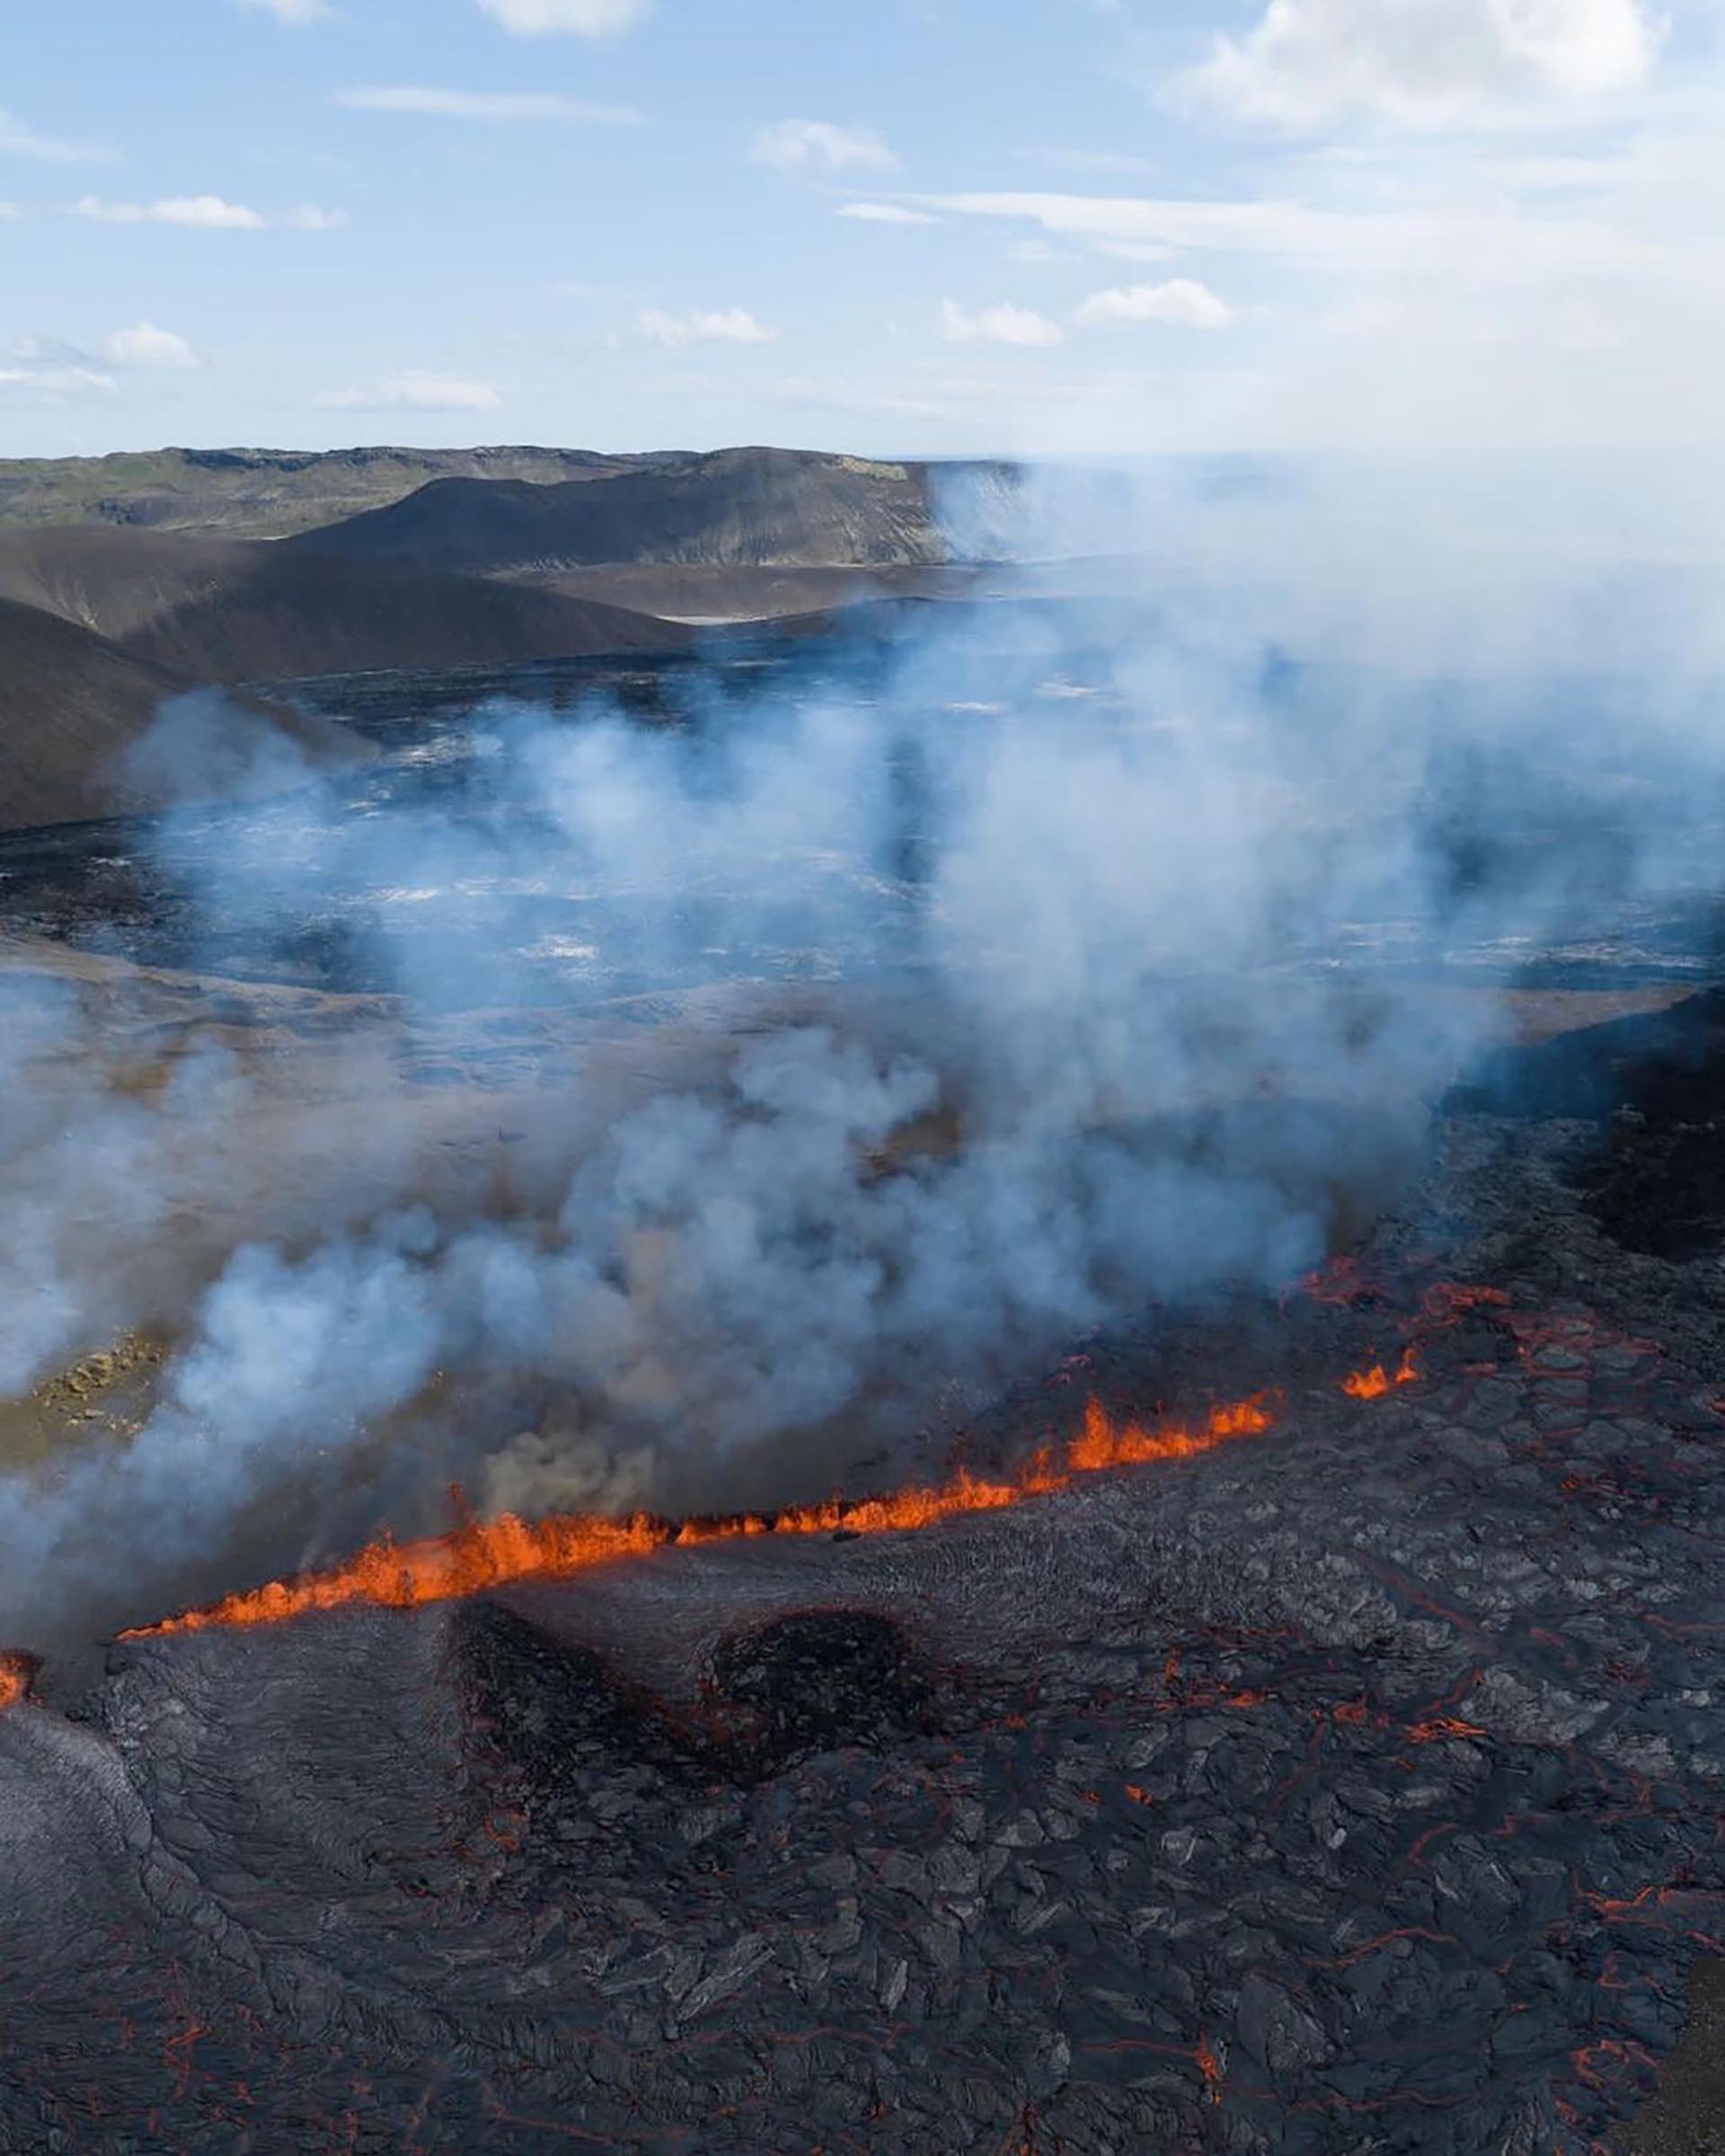 Las autoridades han aclarado que la erupción no pondrá en peligro la vida de las personas ni la infraestructura (IG @gardarolafsphotography)